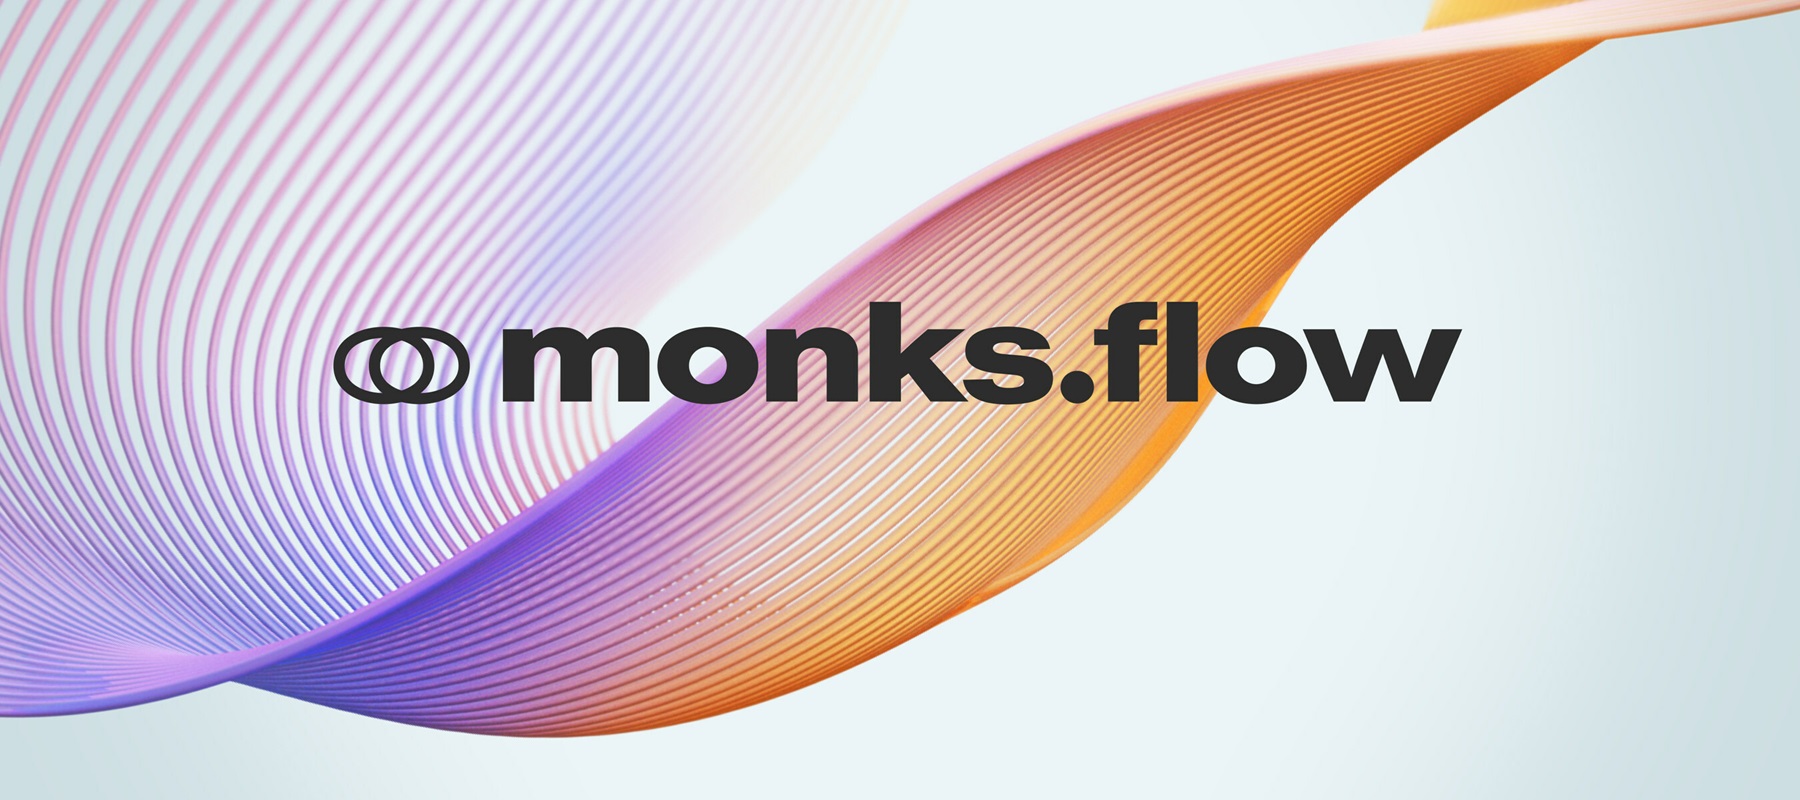 Media.Monks launches AI solution, Monks.Flow